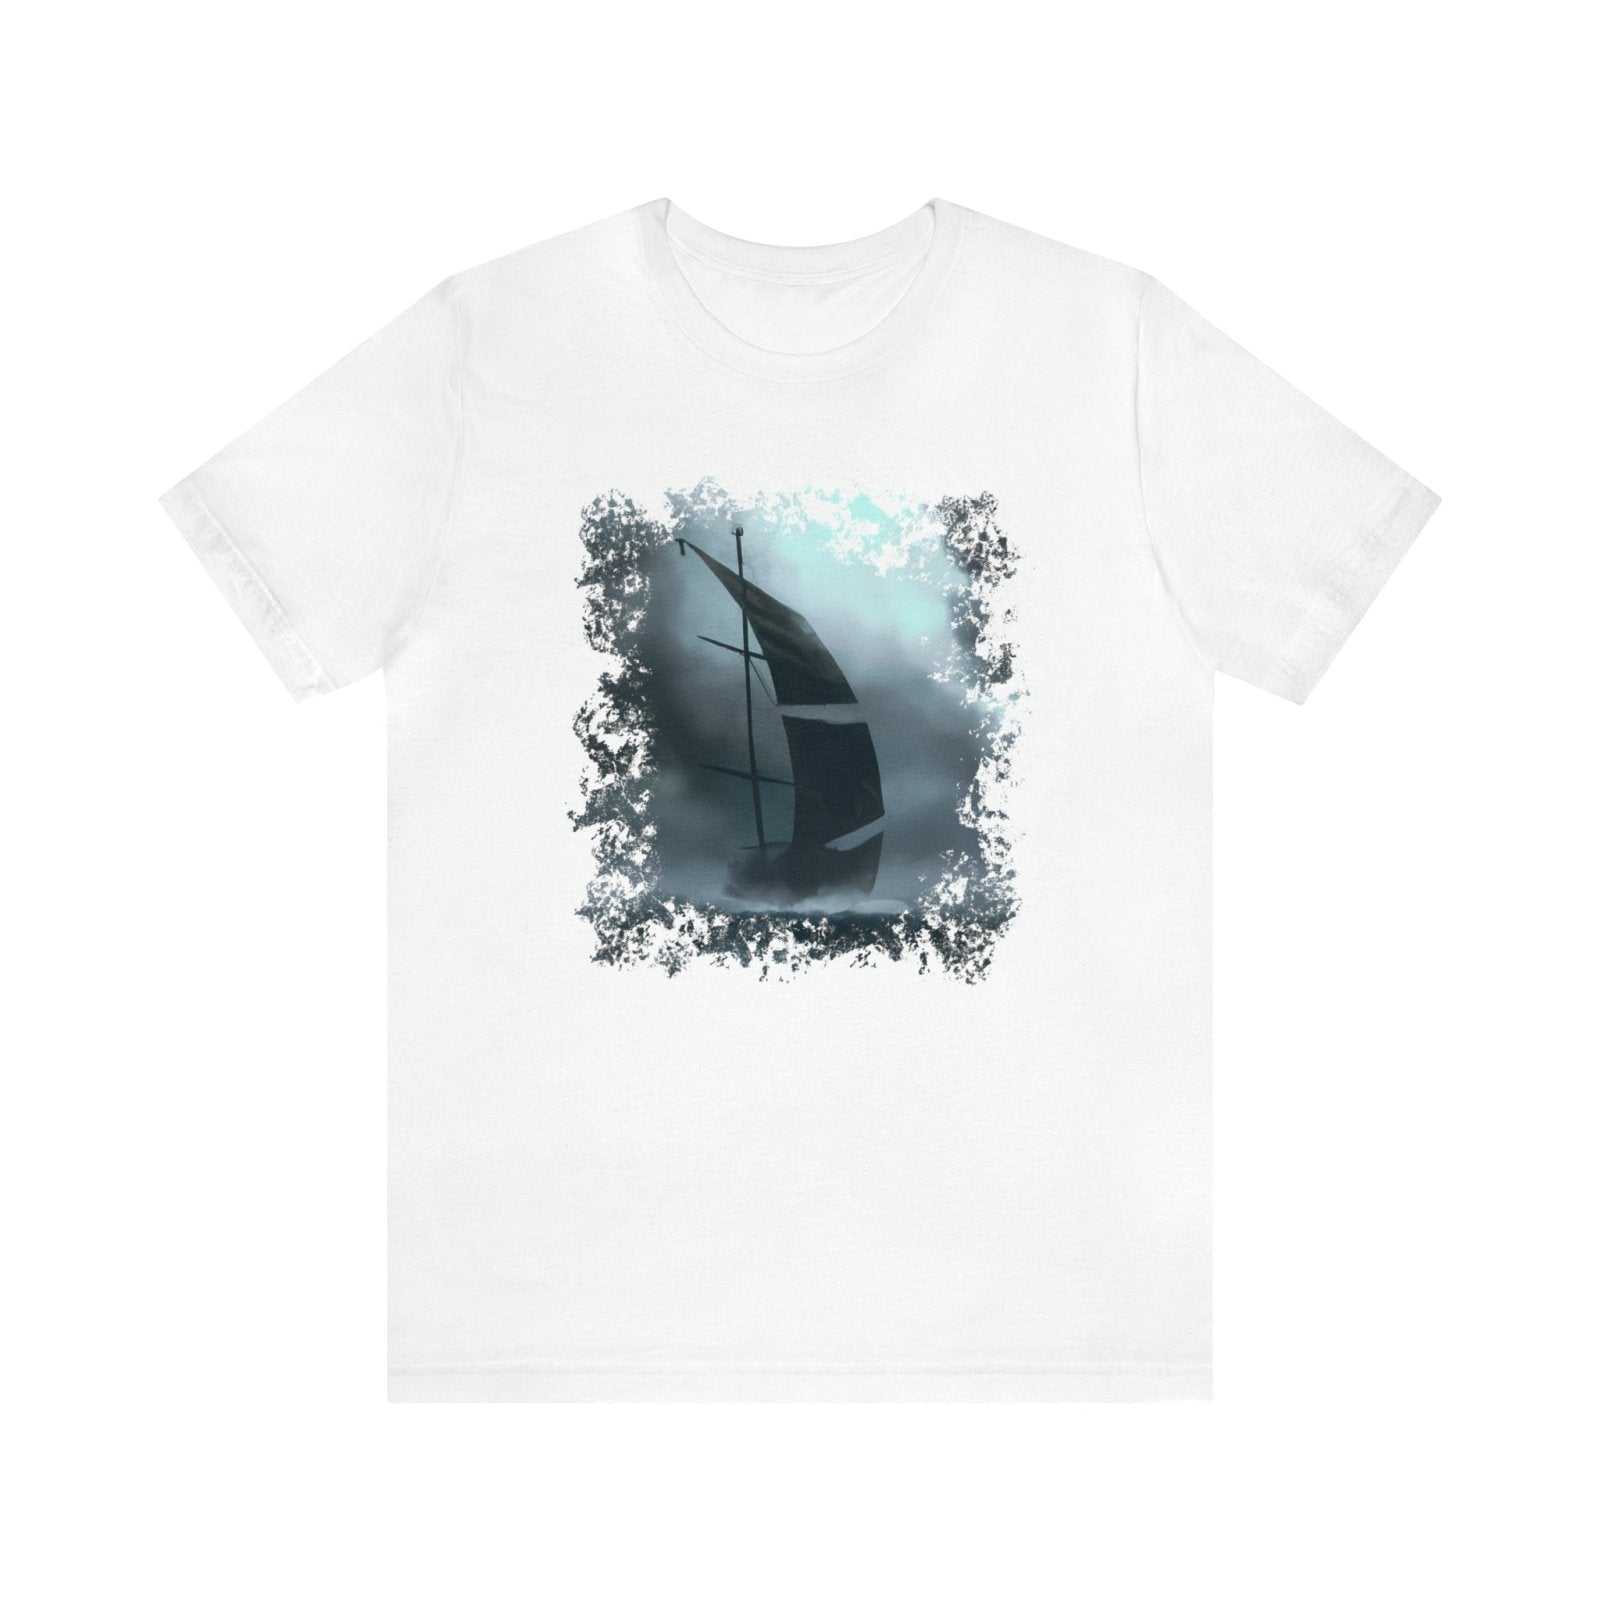 Stormy Sails 2 Unisex T-Shirt - Subtle Blue M